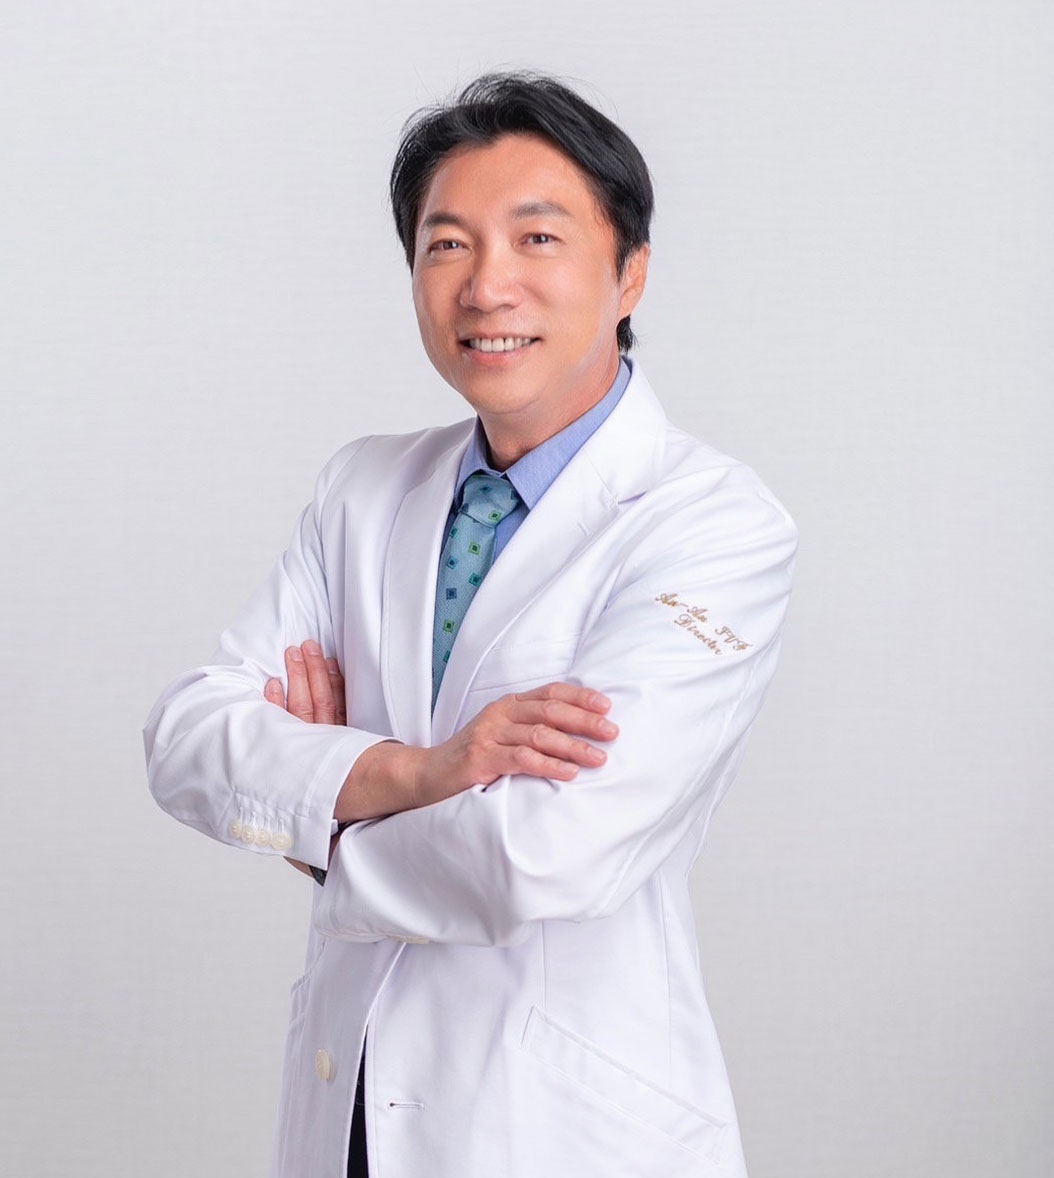 Dr. Hsien-An Pan